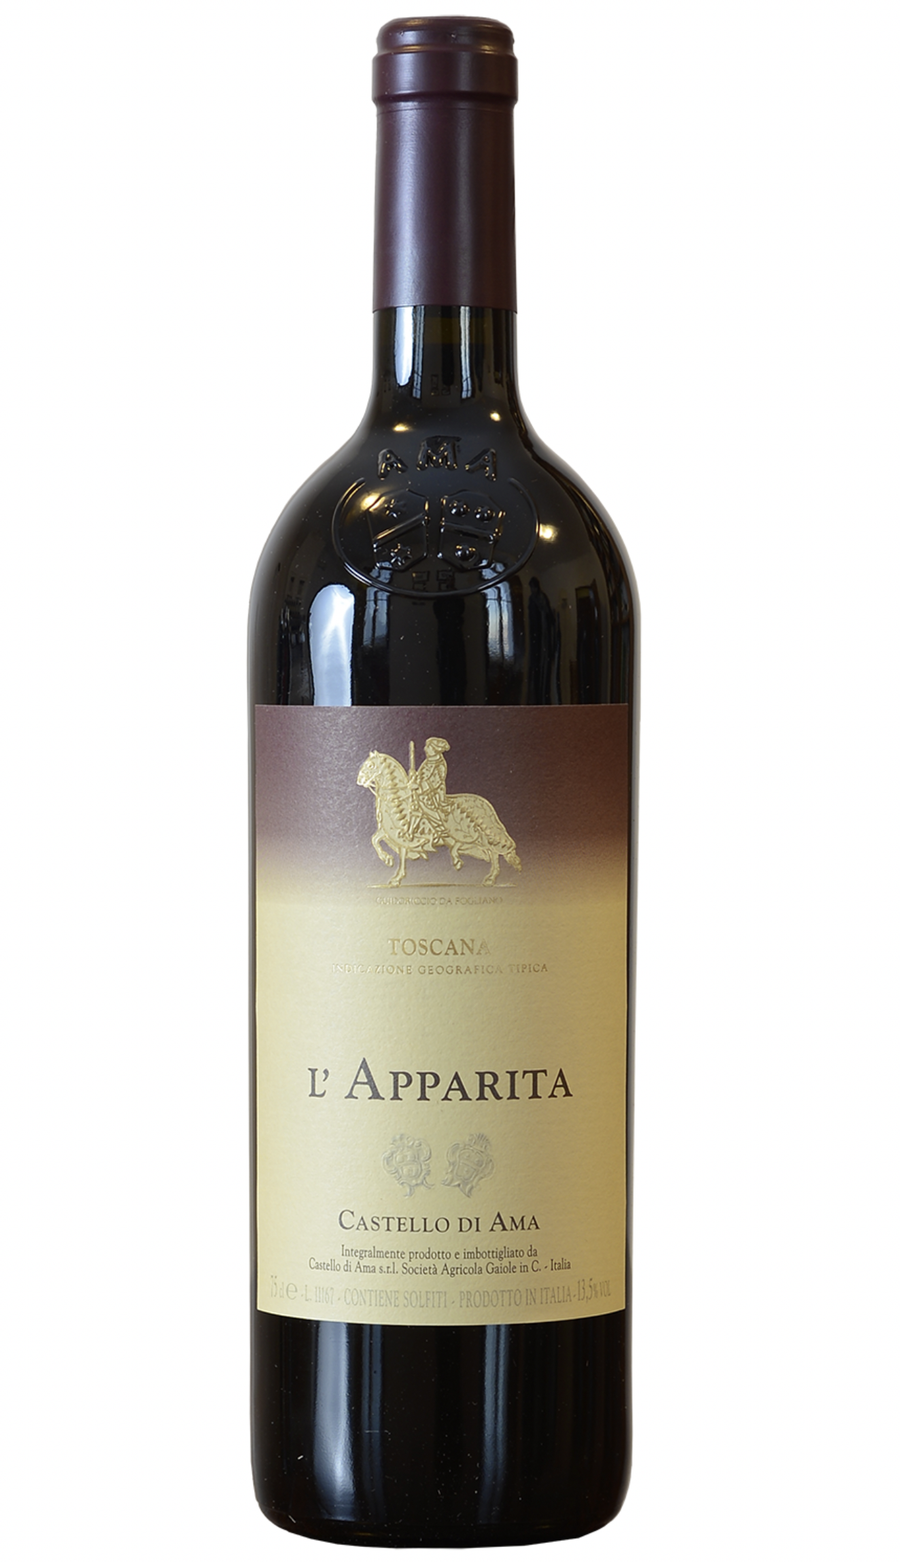 Castello di Ama L'Apparita 2006 - 2021 winery release